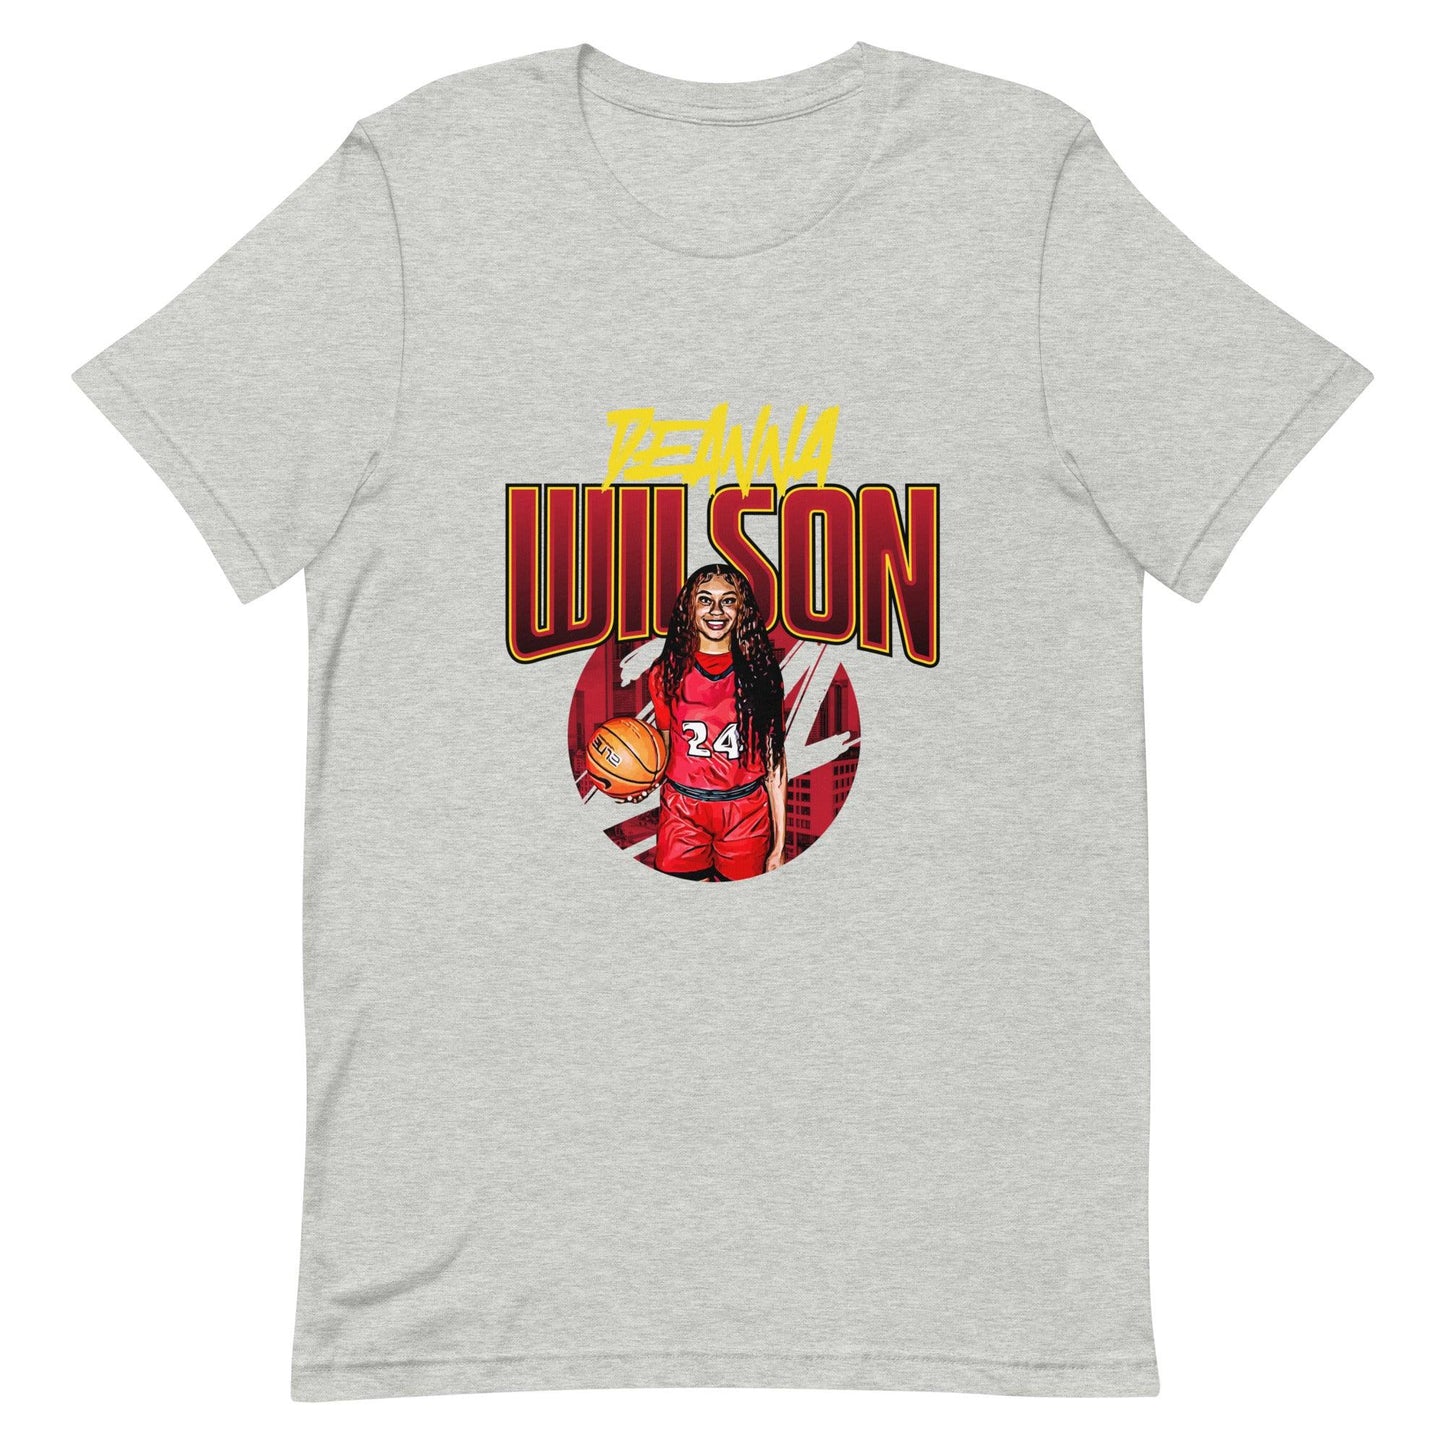 DeAnna Wilson "Gameday" t-shirt - Fan Arch